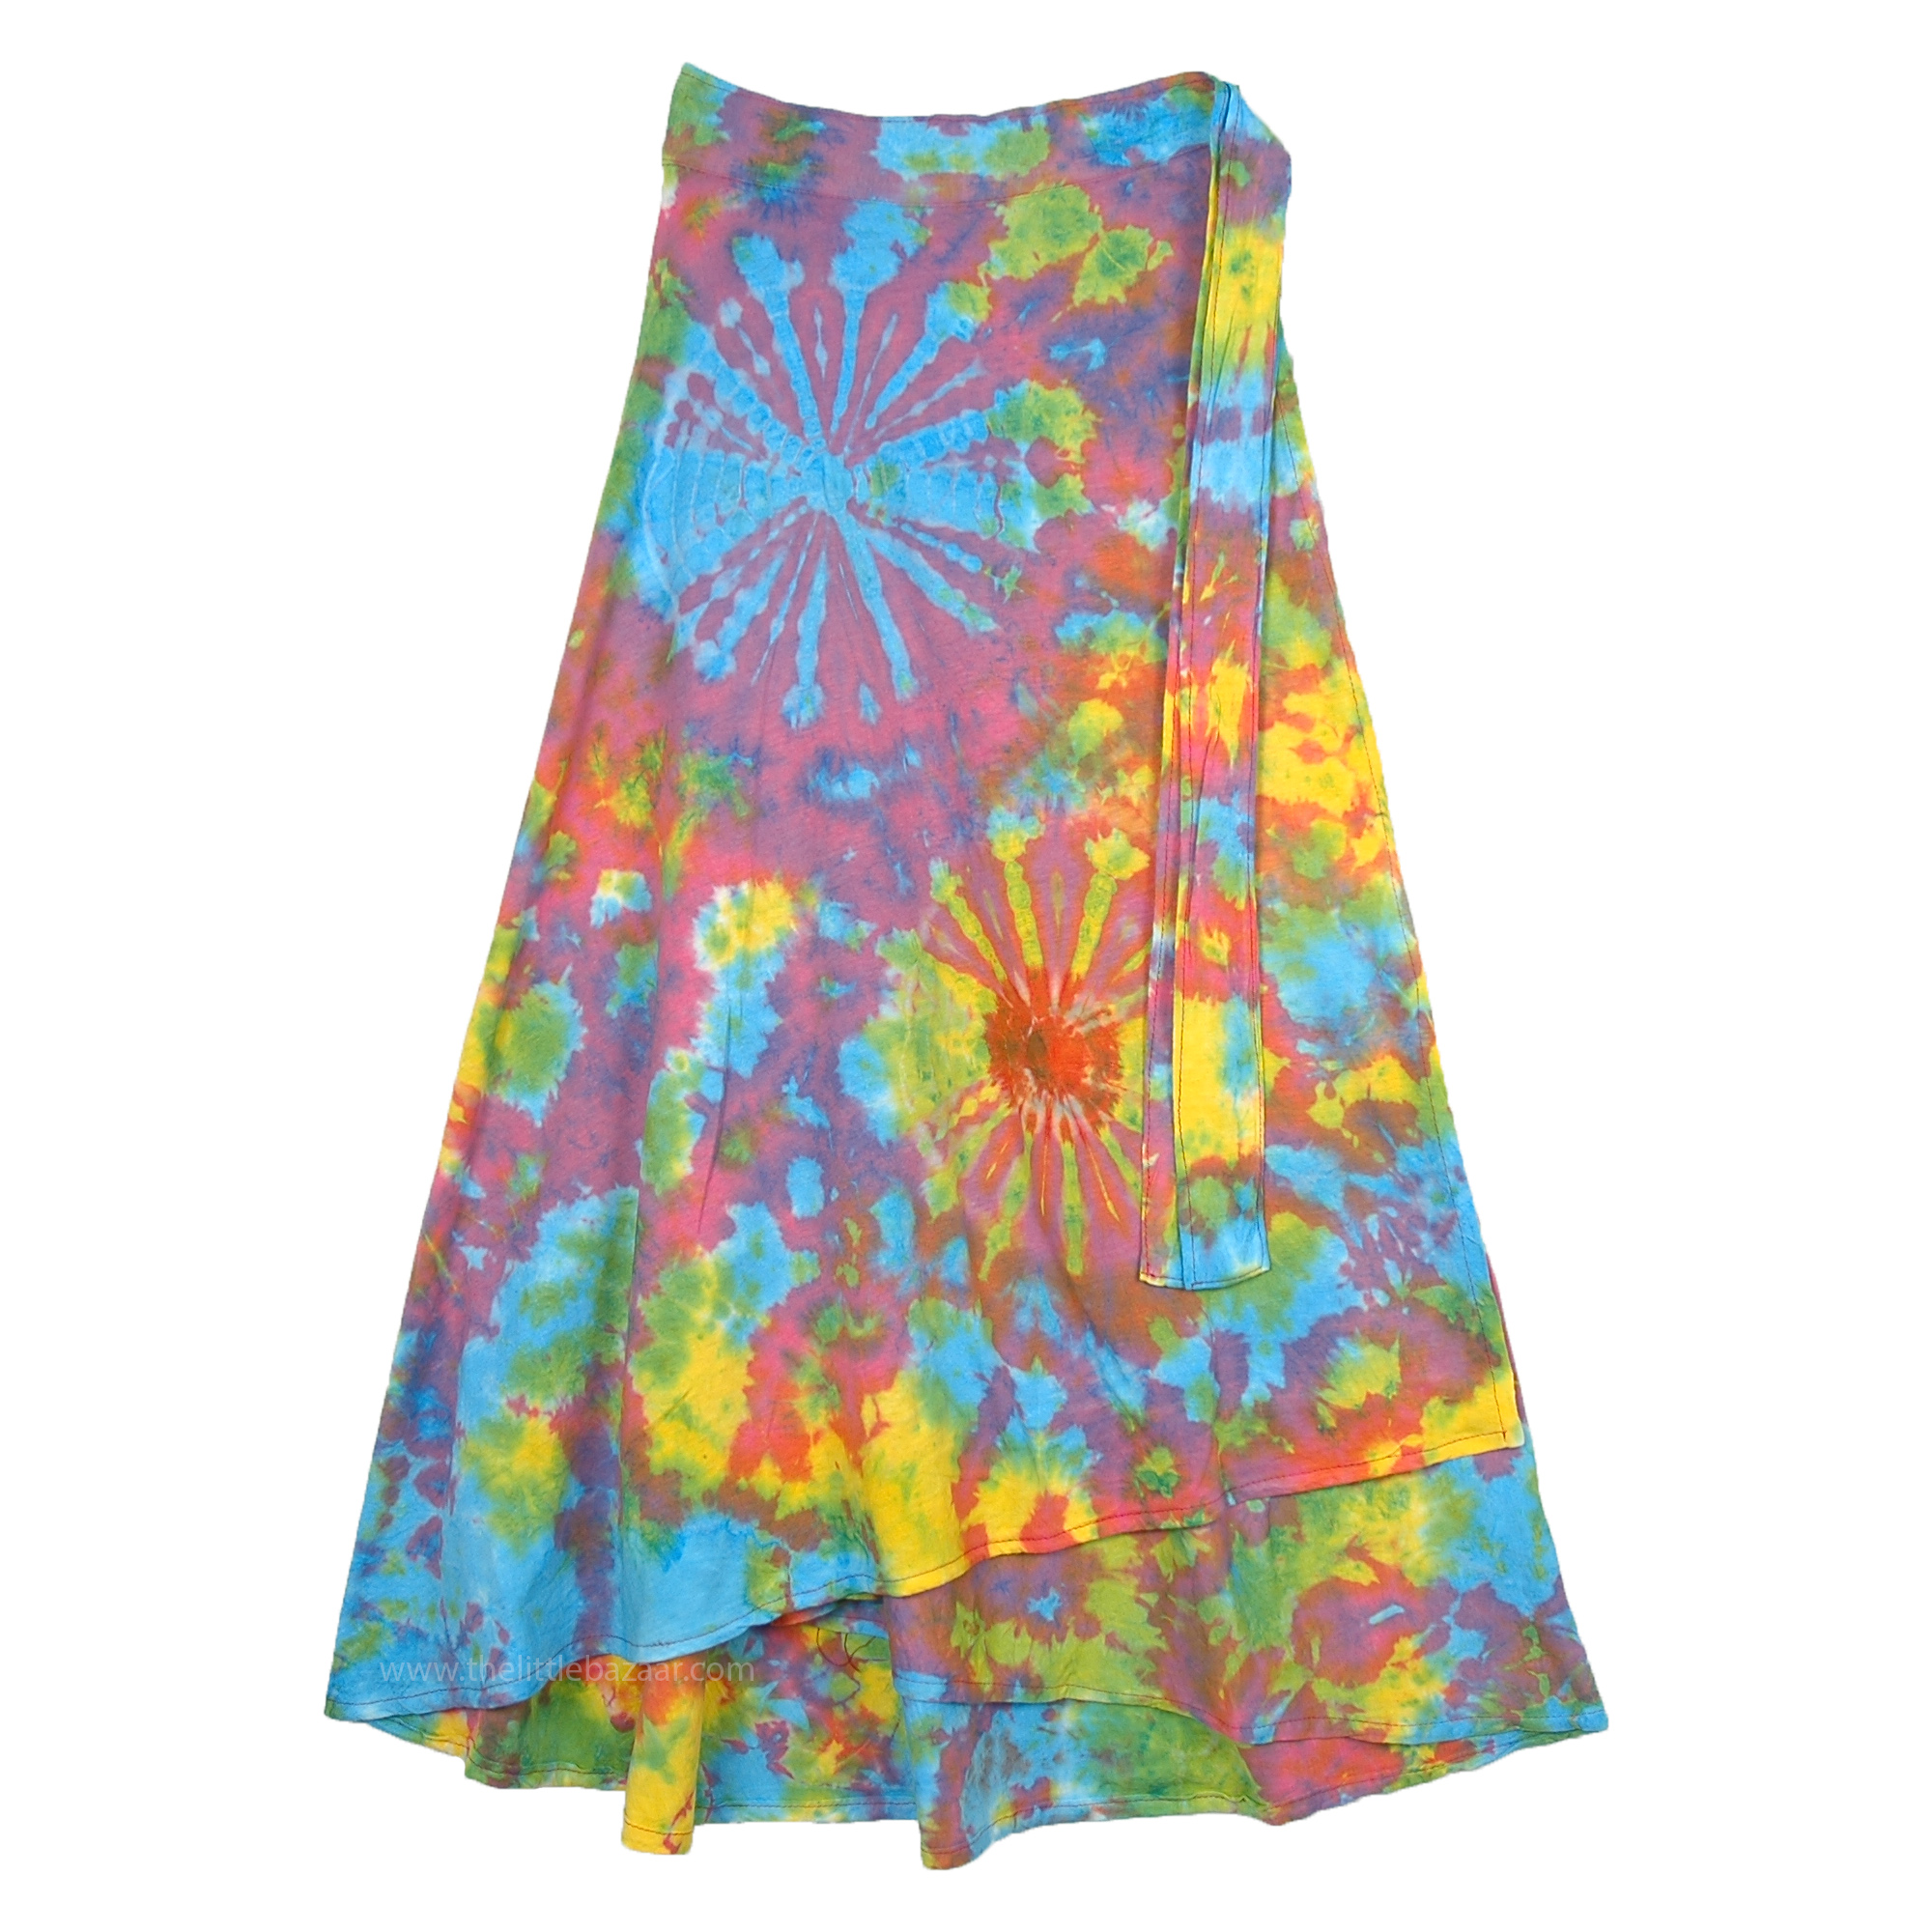 Petite Wrap Around Summer Cotton Skirt in Hippie Tie Dye ...